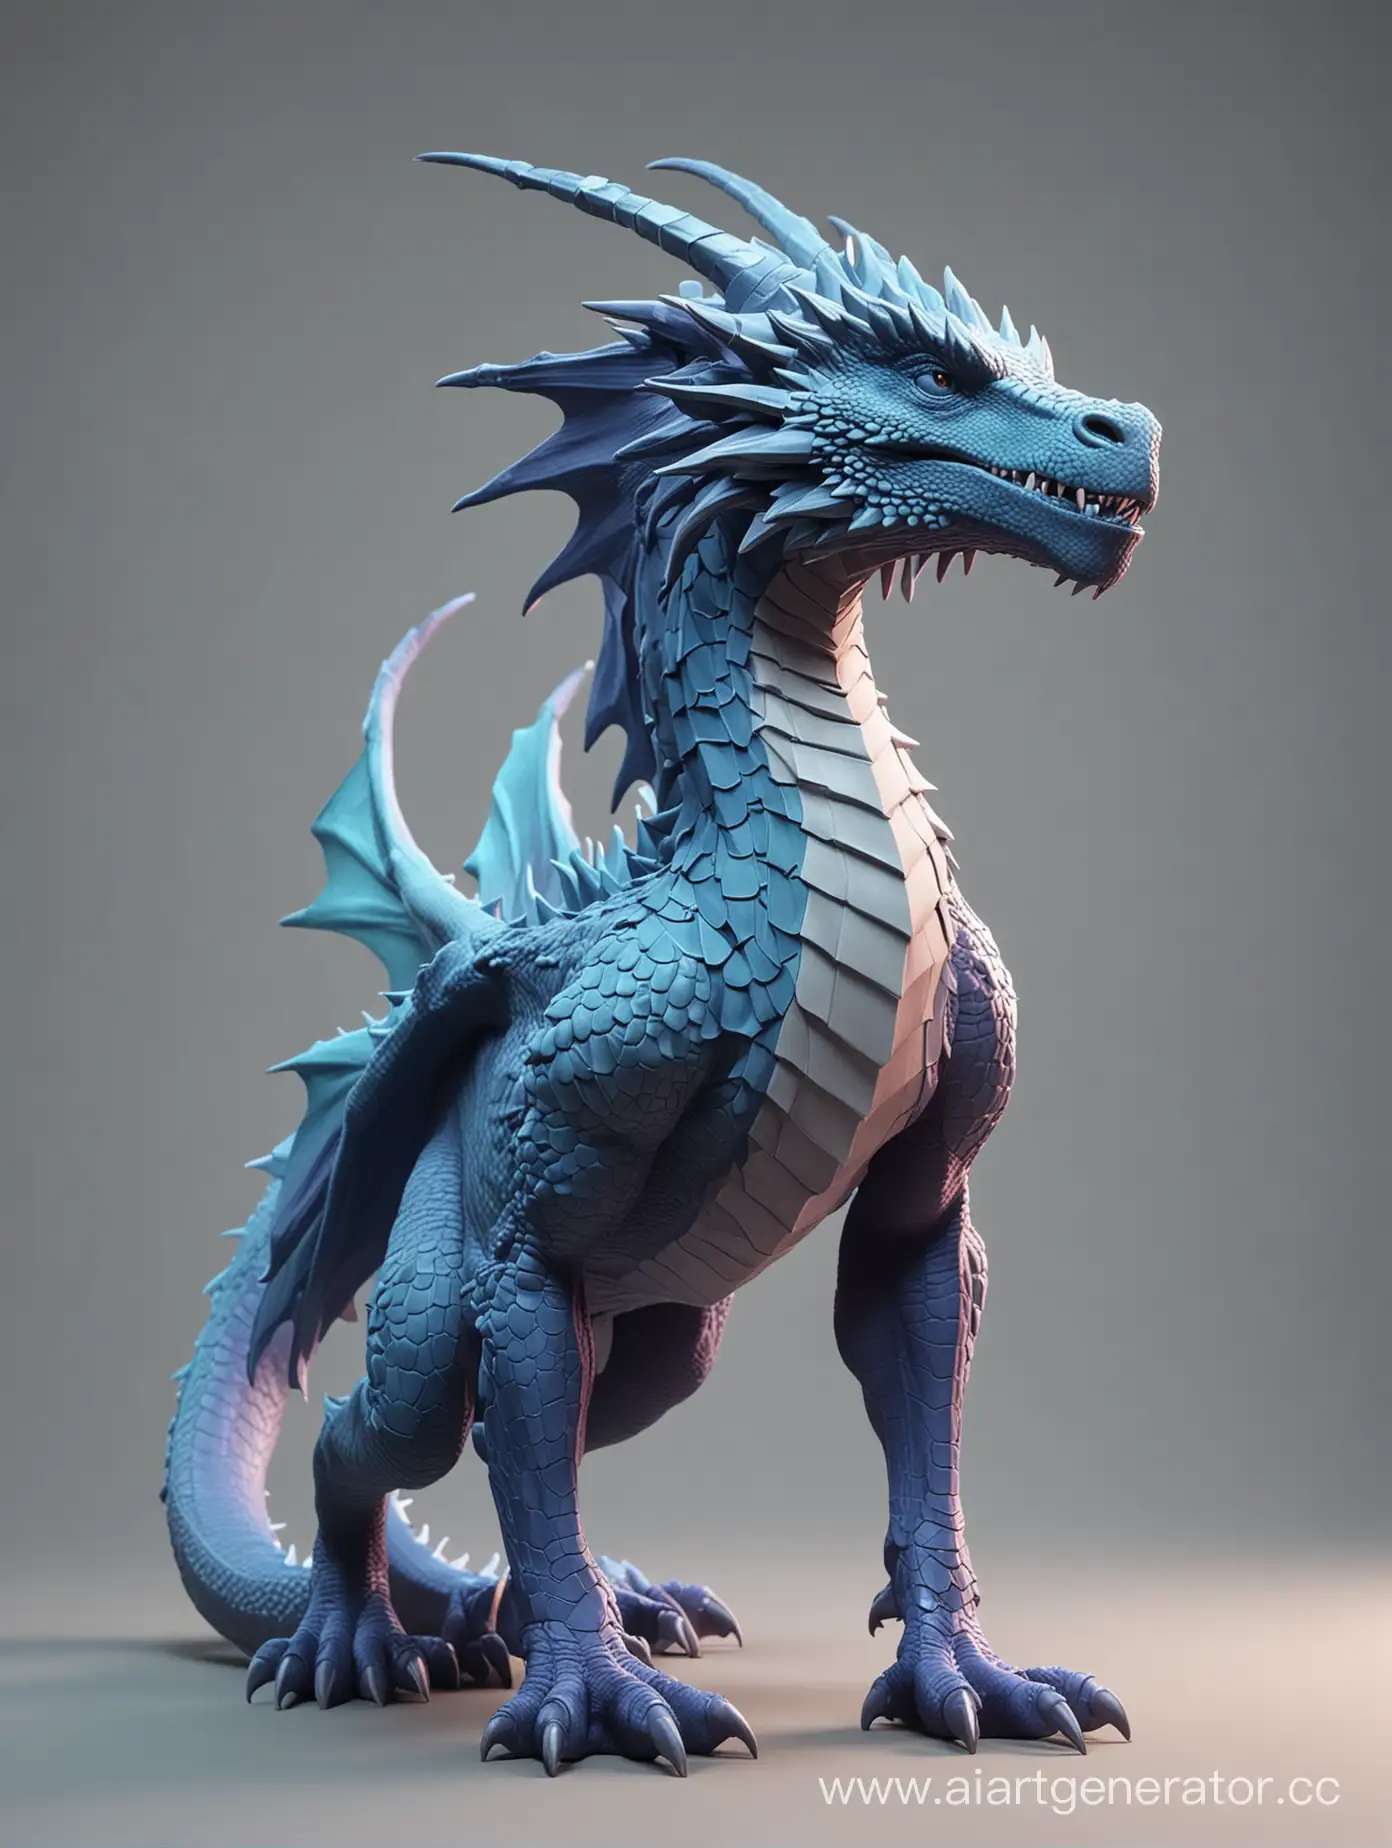 сгенерируй 3д дракона, которого мог бы нарисовать гейм-дизайнер. Фон должен быть градиентом цвета #7A7E7F. Стиль - минимализм